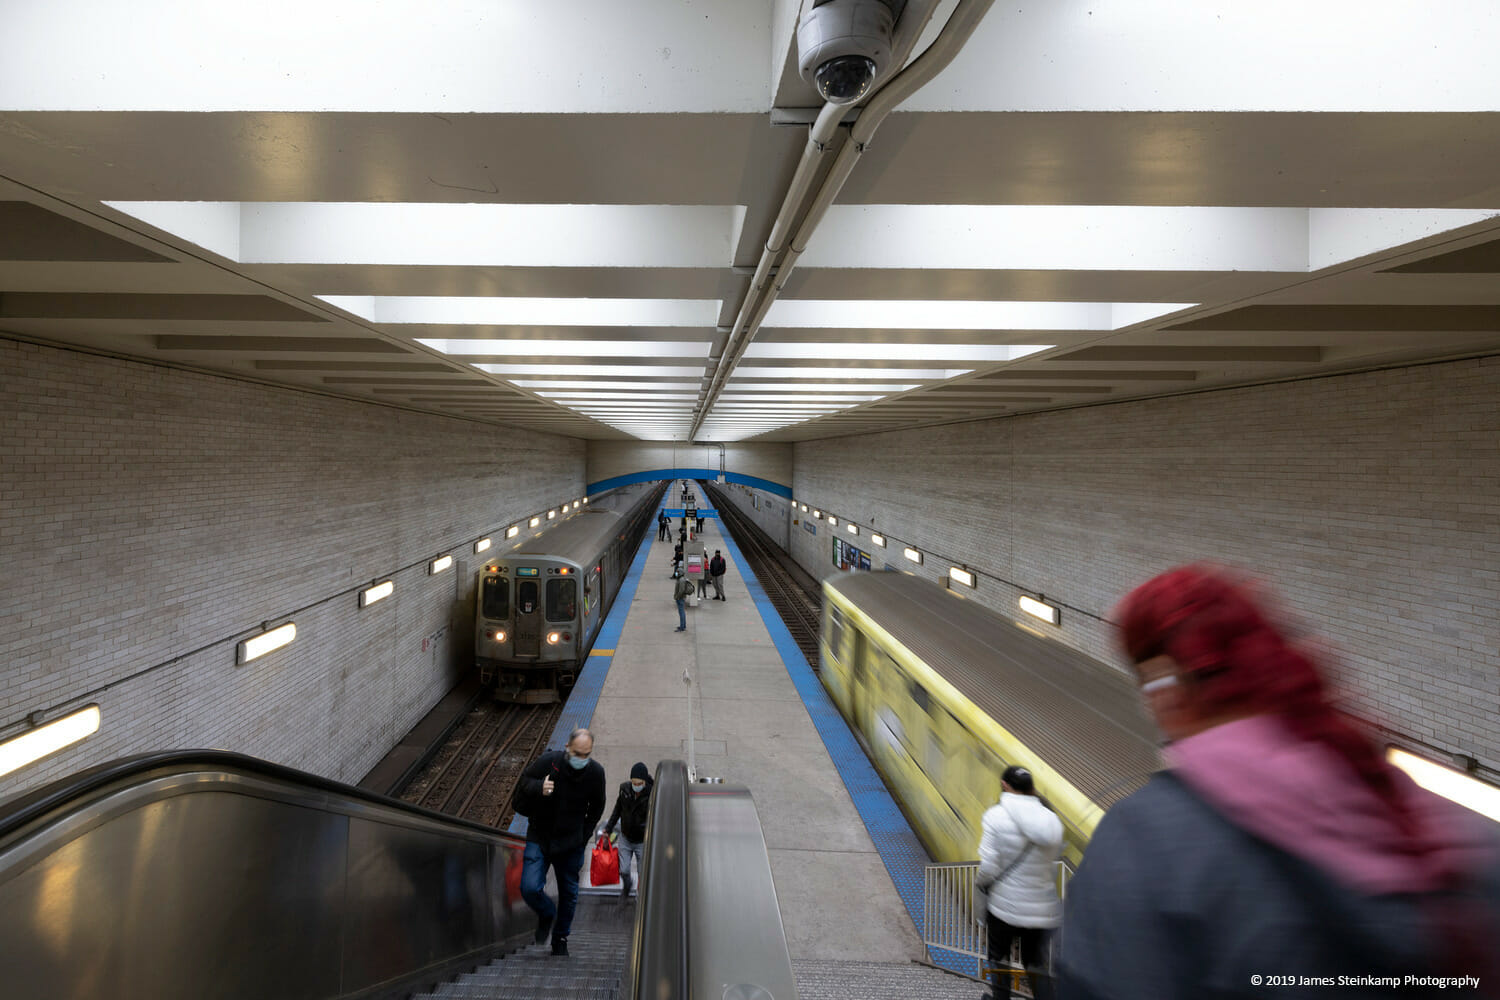 Une femme descend un escalier roulant dans une station de métro.